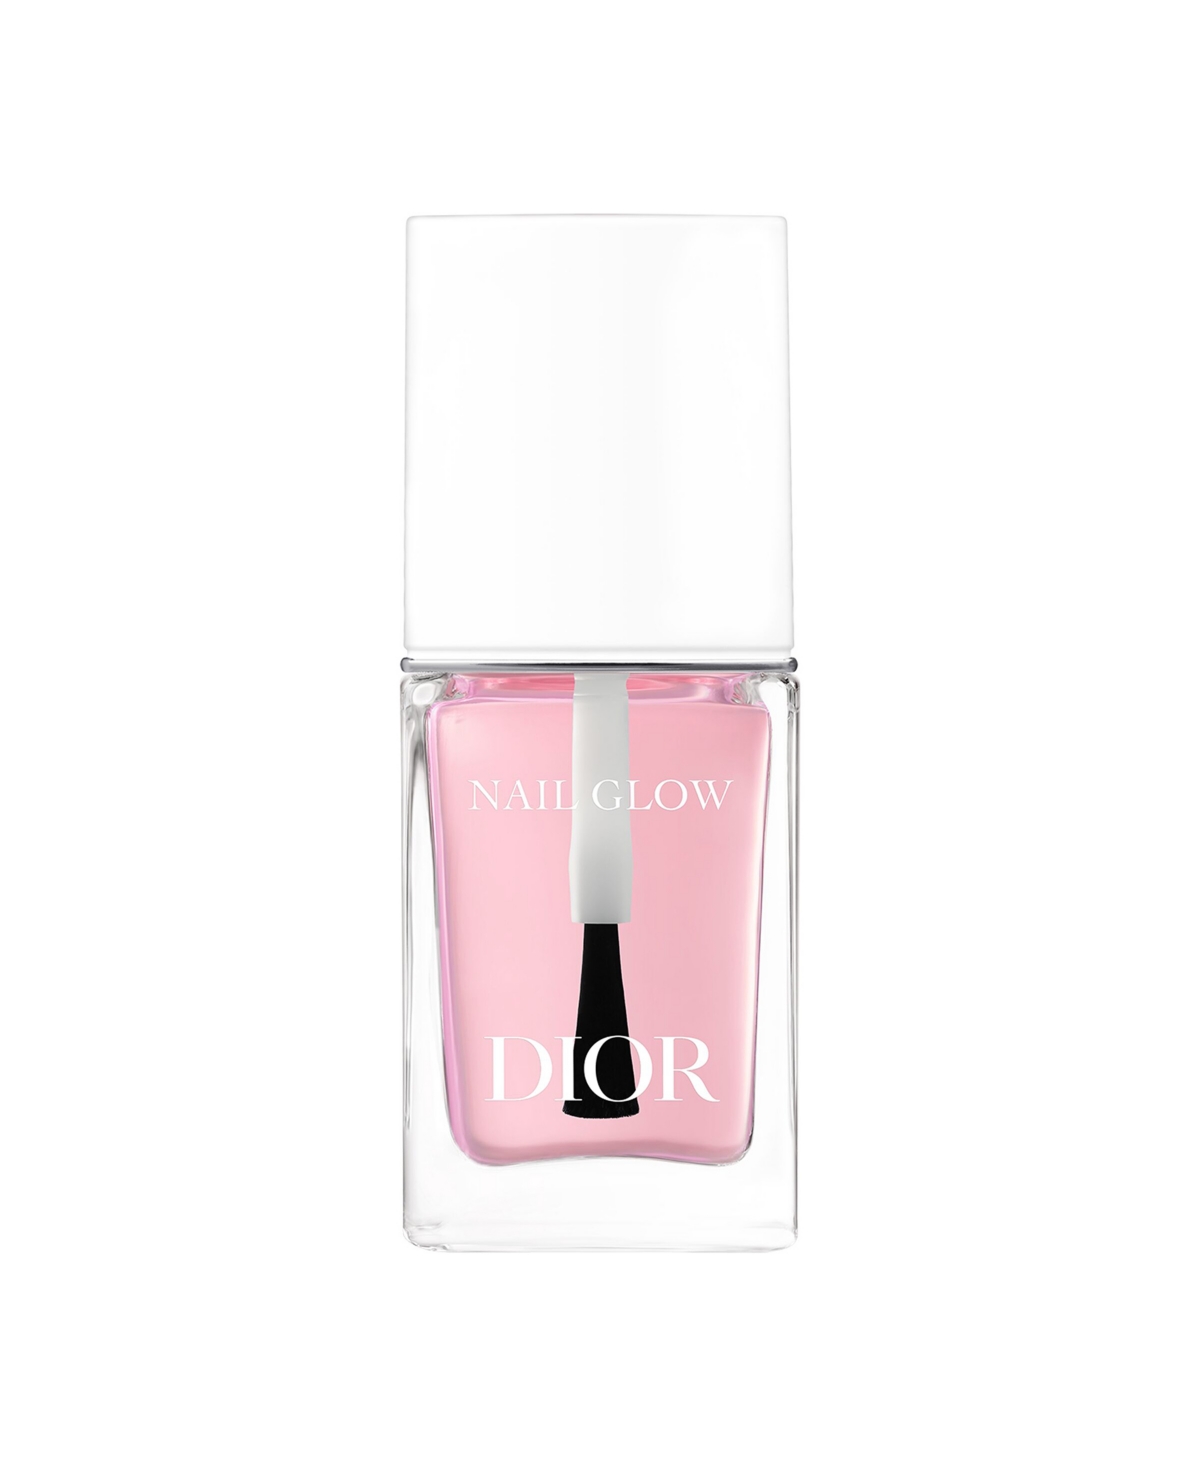 Dior Nail Glow Beautifying Nail Care In No Color